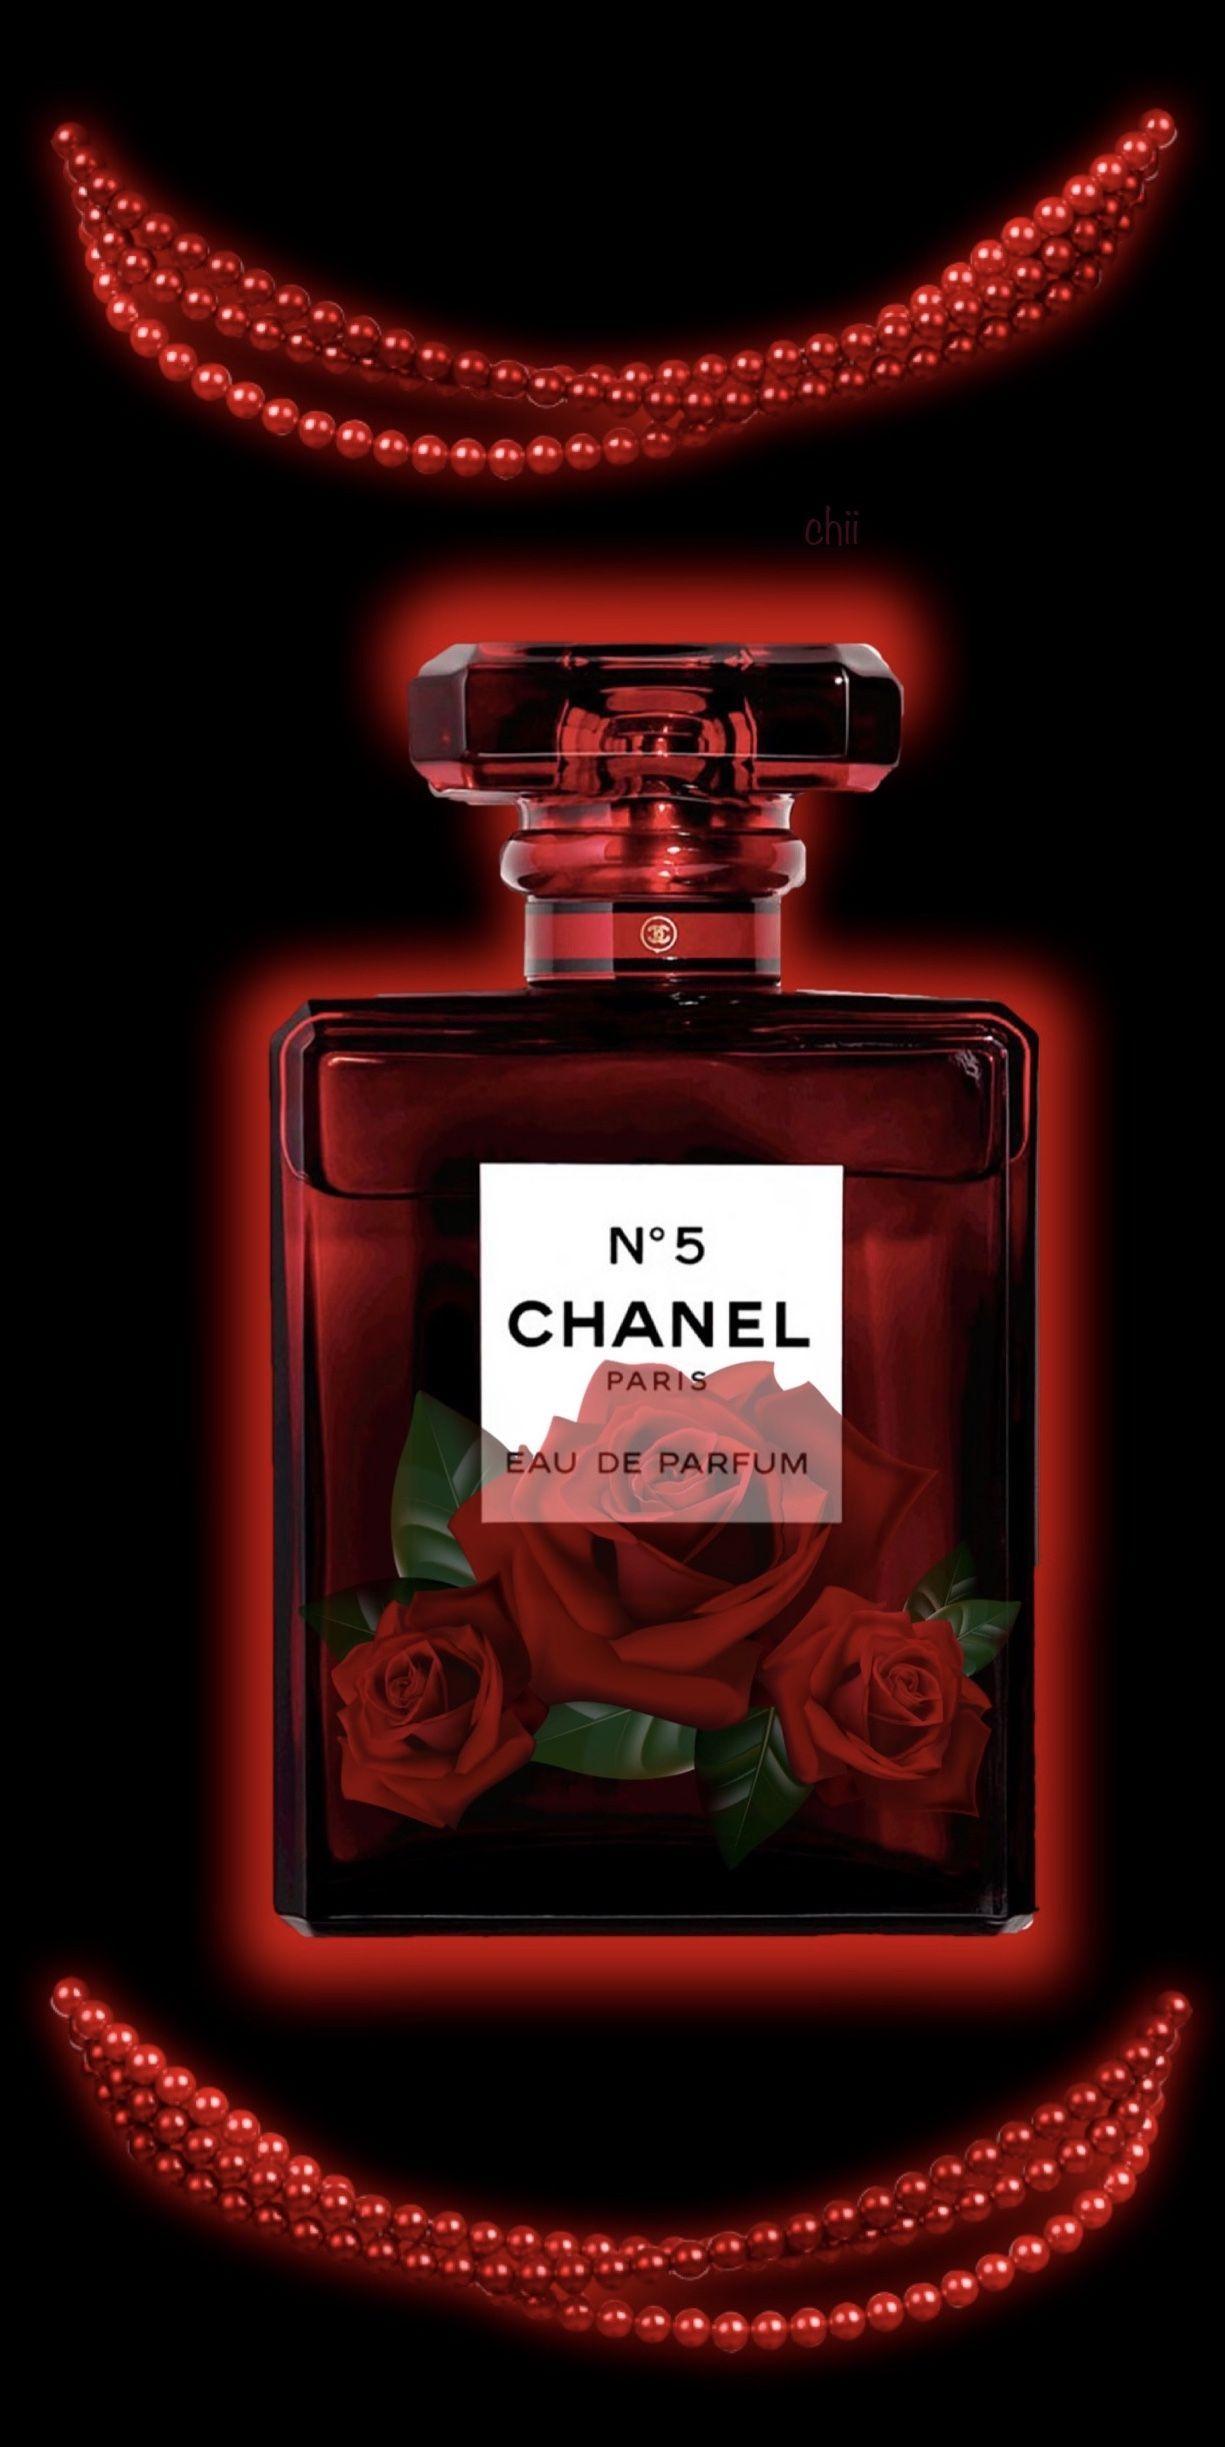 Một chiếc iPhone đẳng cấp càng trở nên hoàn hảo hơn khi được trang trí với hình nền Chanel đỏ sang trọng. Sự kết hợp giữa thiết kế đầy cá tính và phong cách tinh tế của Chanel sẽ khiến bạn không thể bỏ qua.